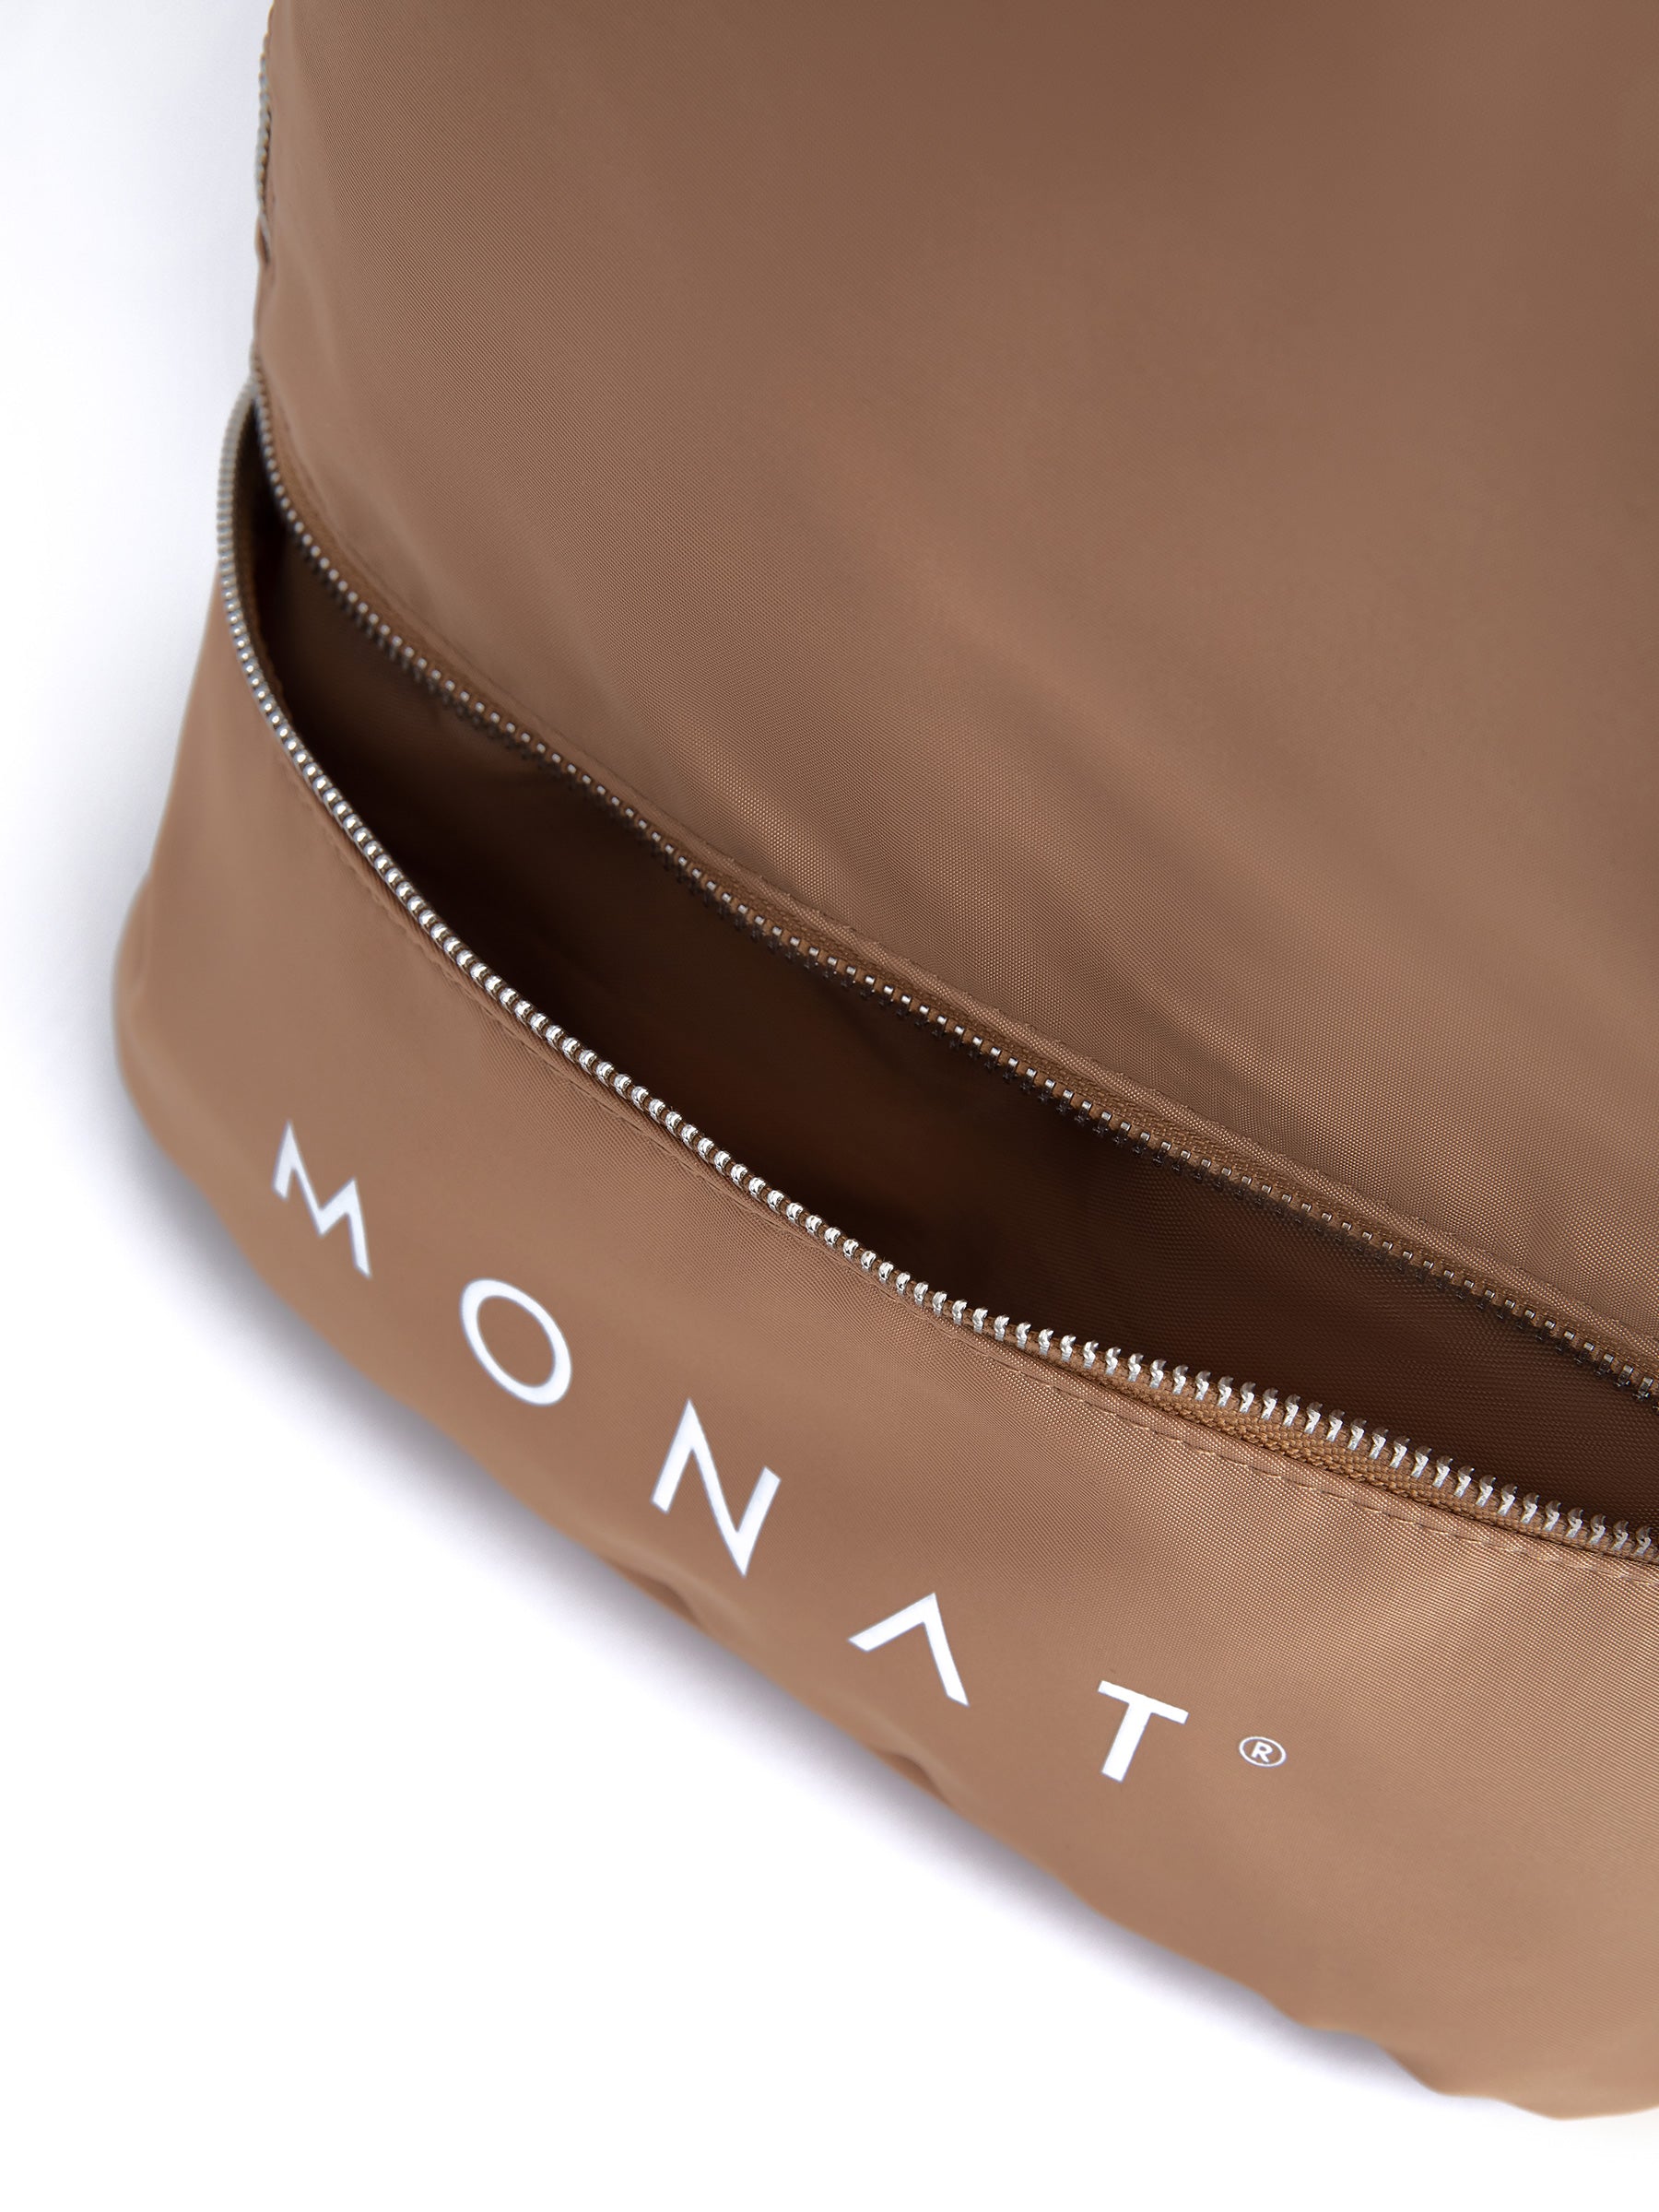 MONAT CROSS BODY BAG -Silver - MONAT Gear